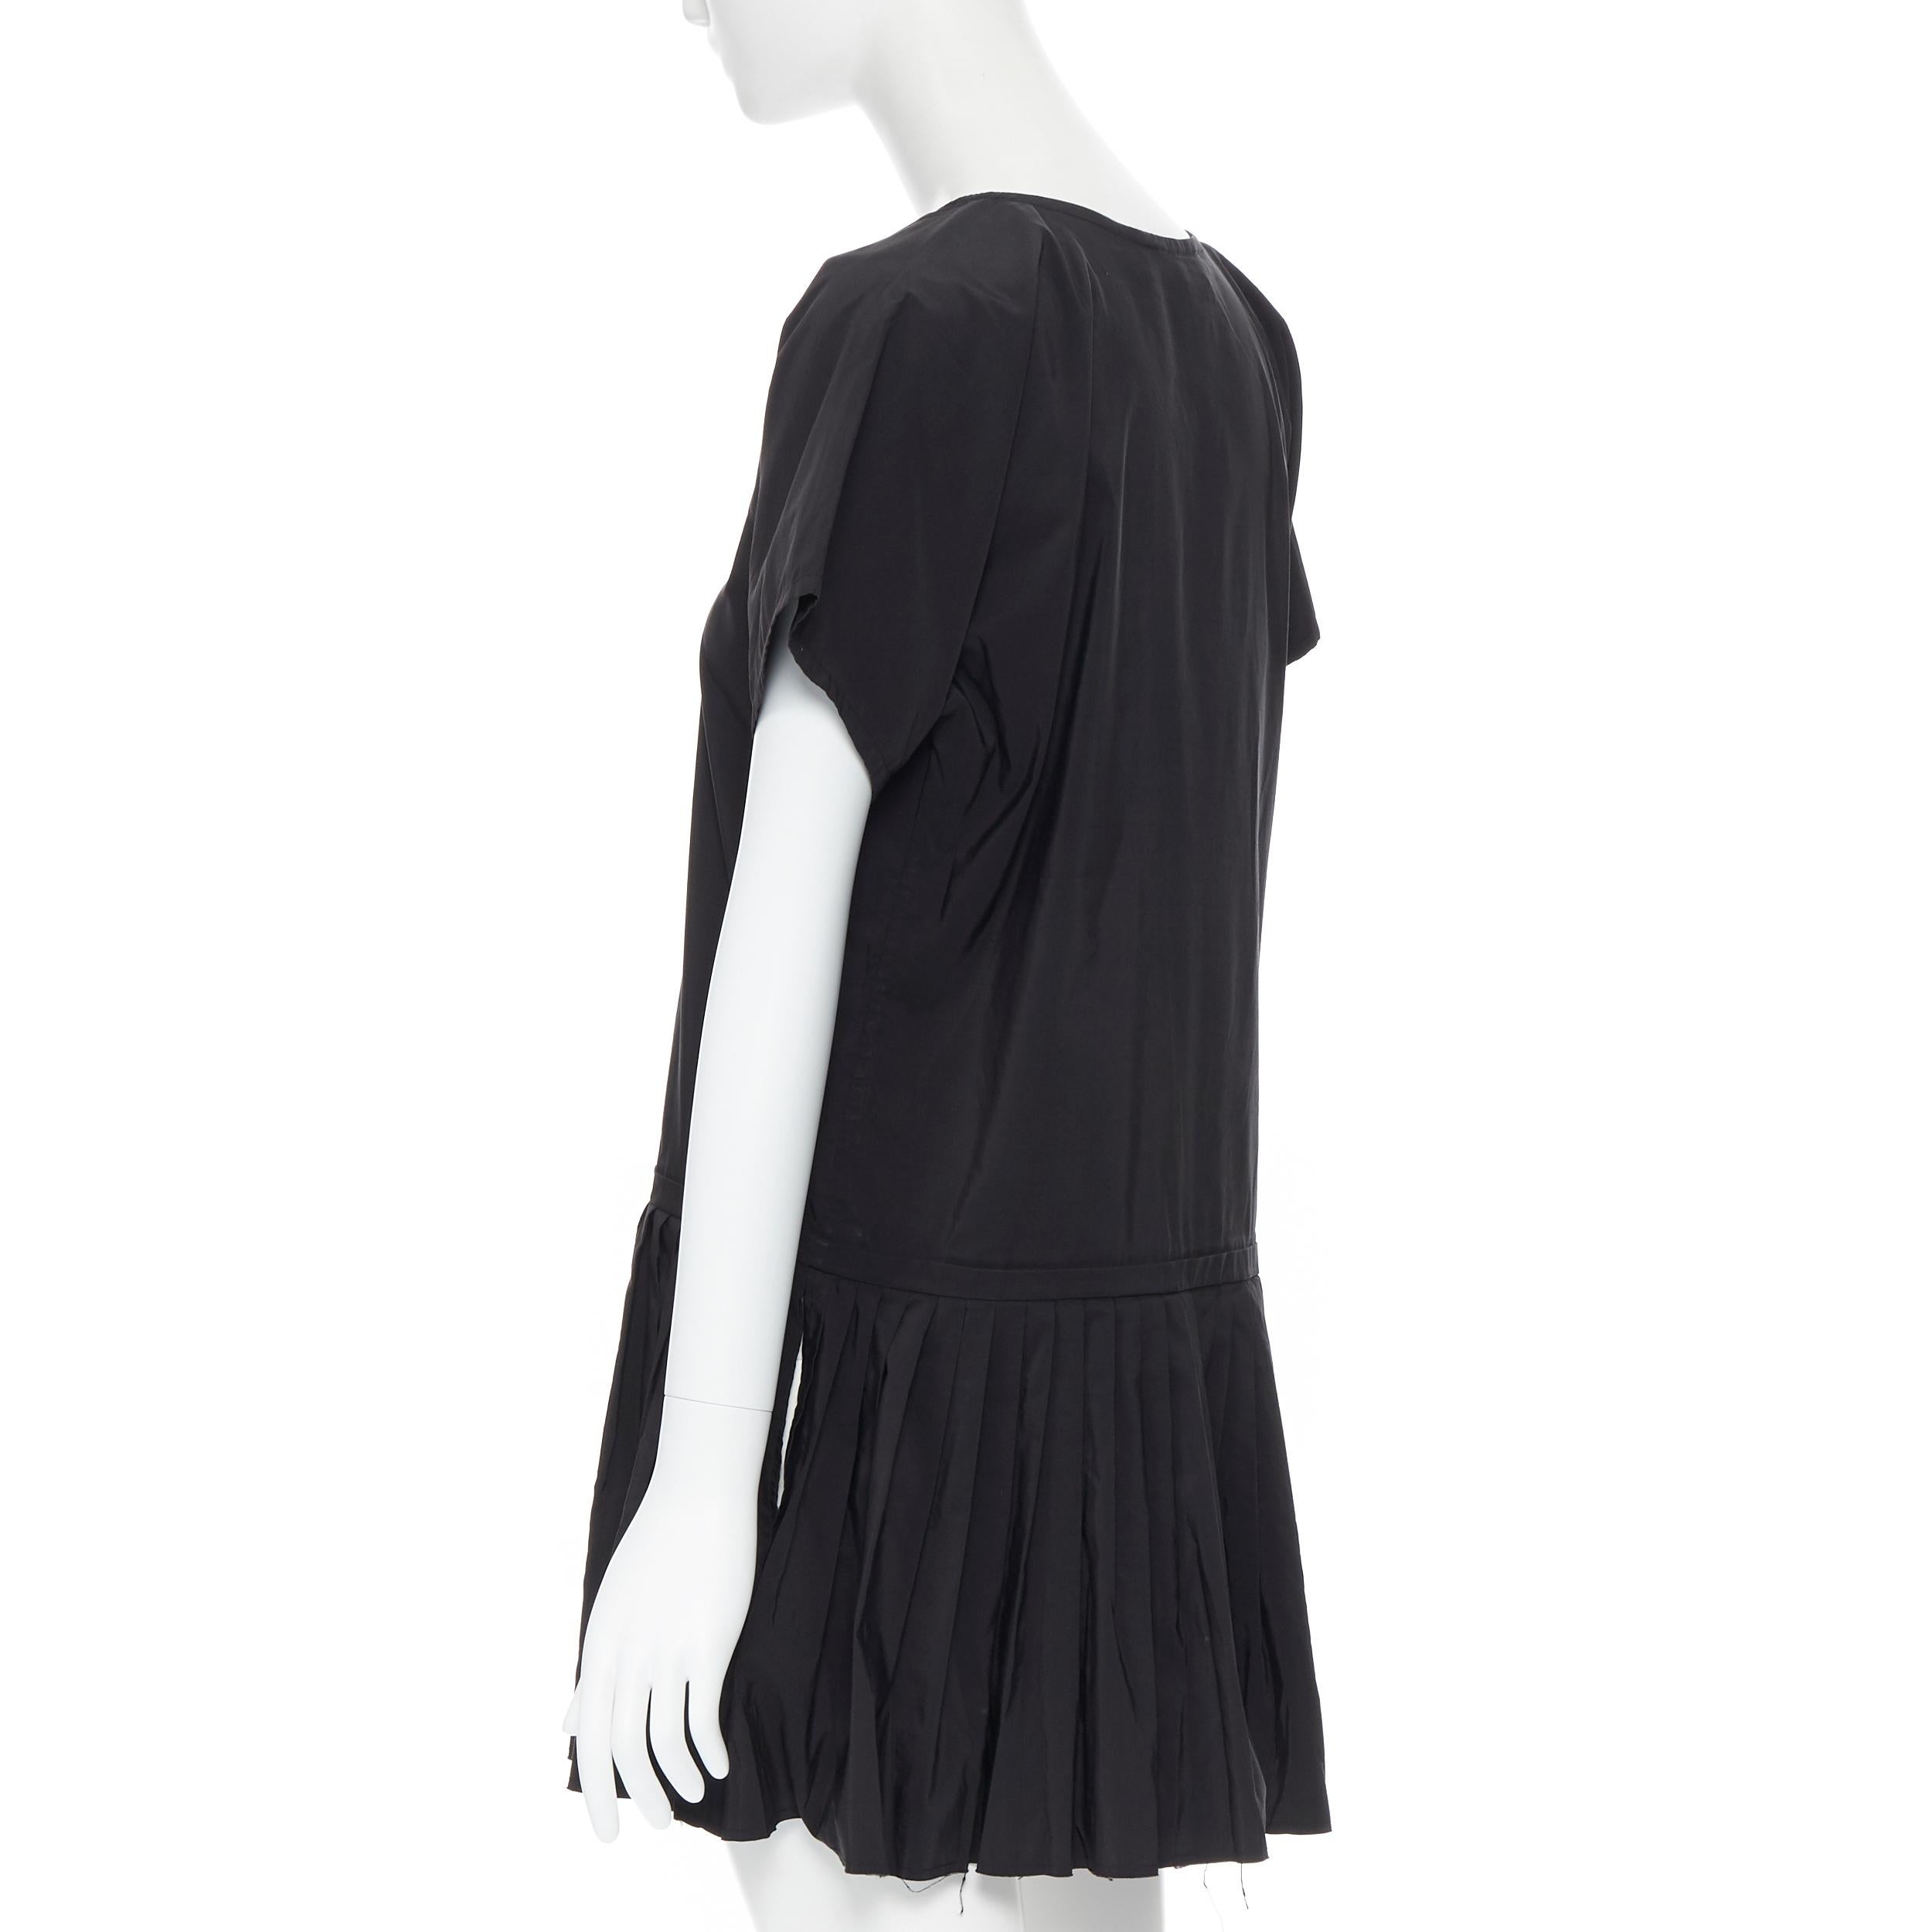 YVES SAINT LAURENT 2010 black pleated skirt side slit tunic dress EU39 / 15.5 3